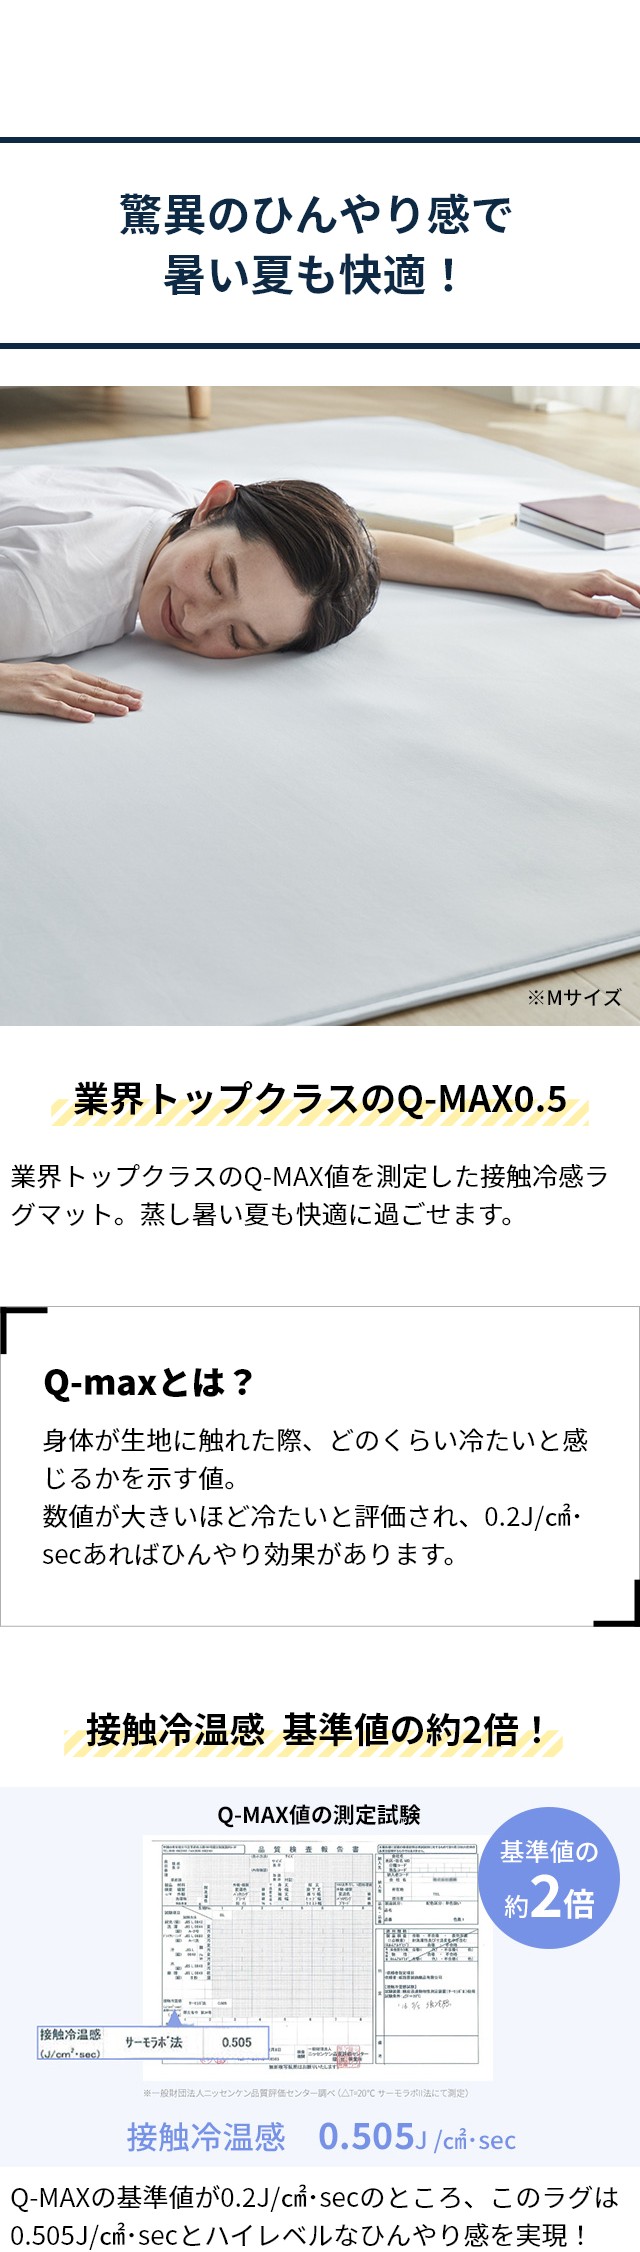 Niceday (ナイスデイ) 超ひんやり冷感 ラグマット Q-MAX0.5 Mサイズ 200×250cm